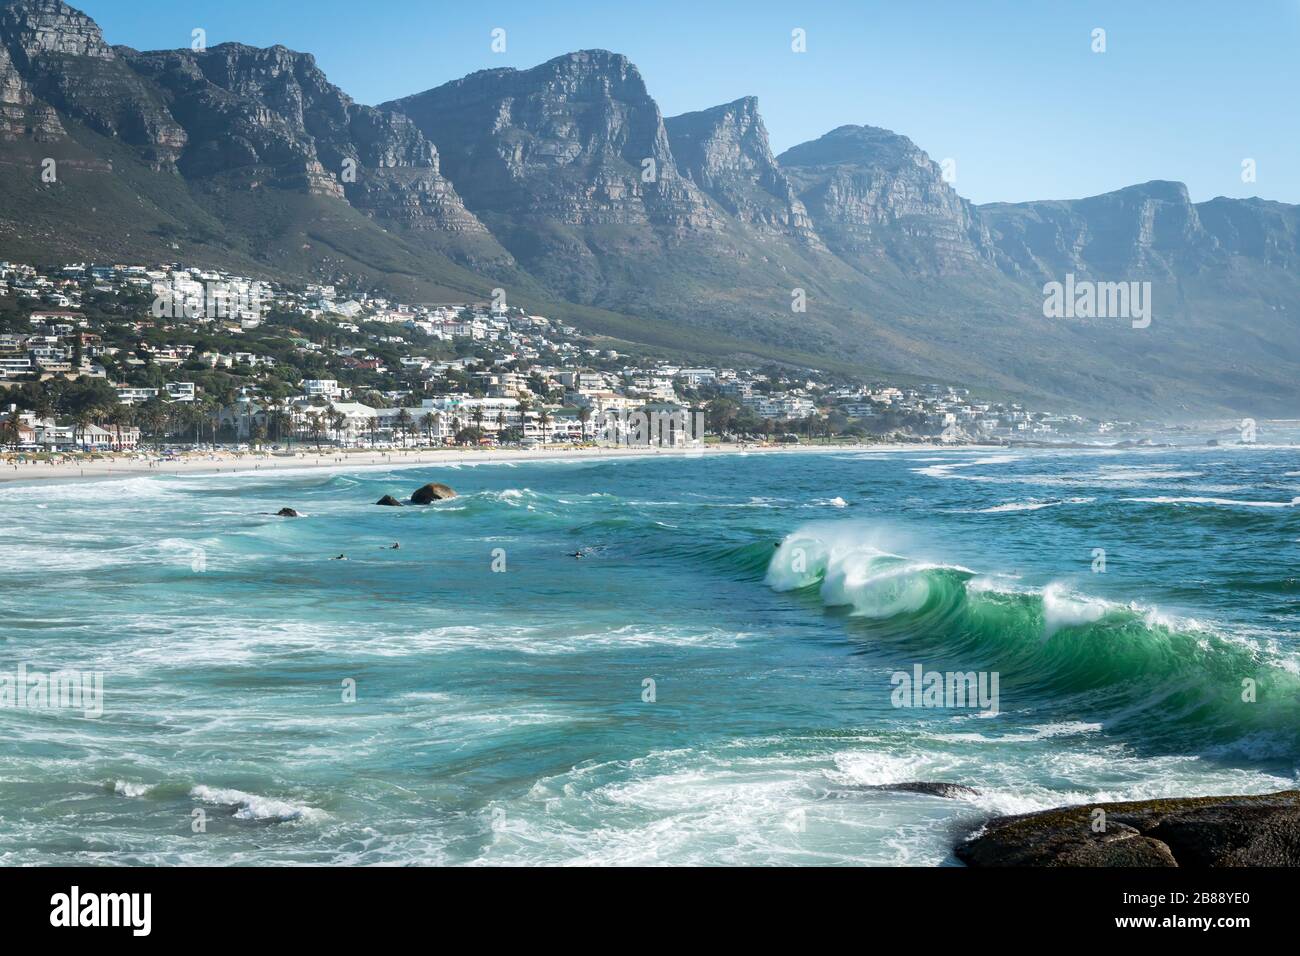 Città del Capo, Sud Africa - 25 novembre 2019 - onde nell'oceano Atlantico su Camps Bay Beach e catena montuosa dei dodici Apostoli Foto Stock